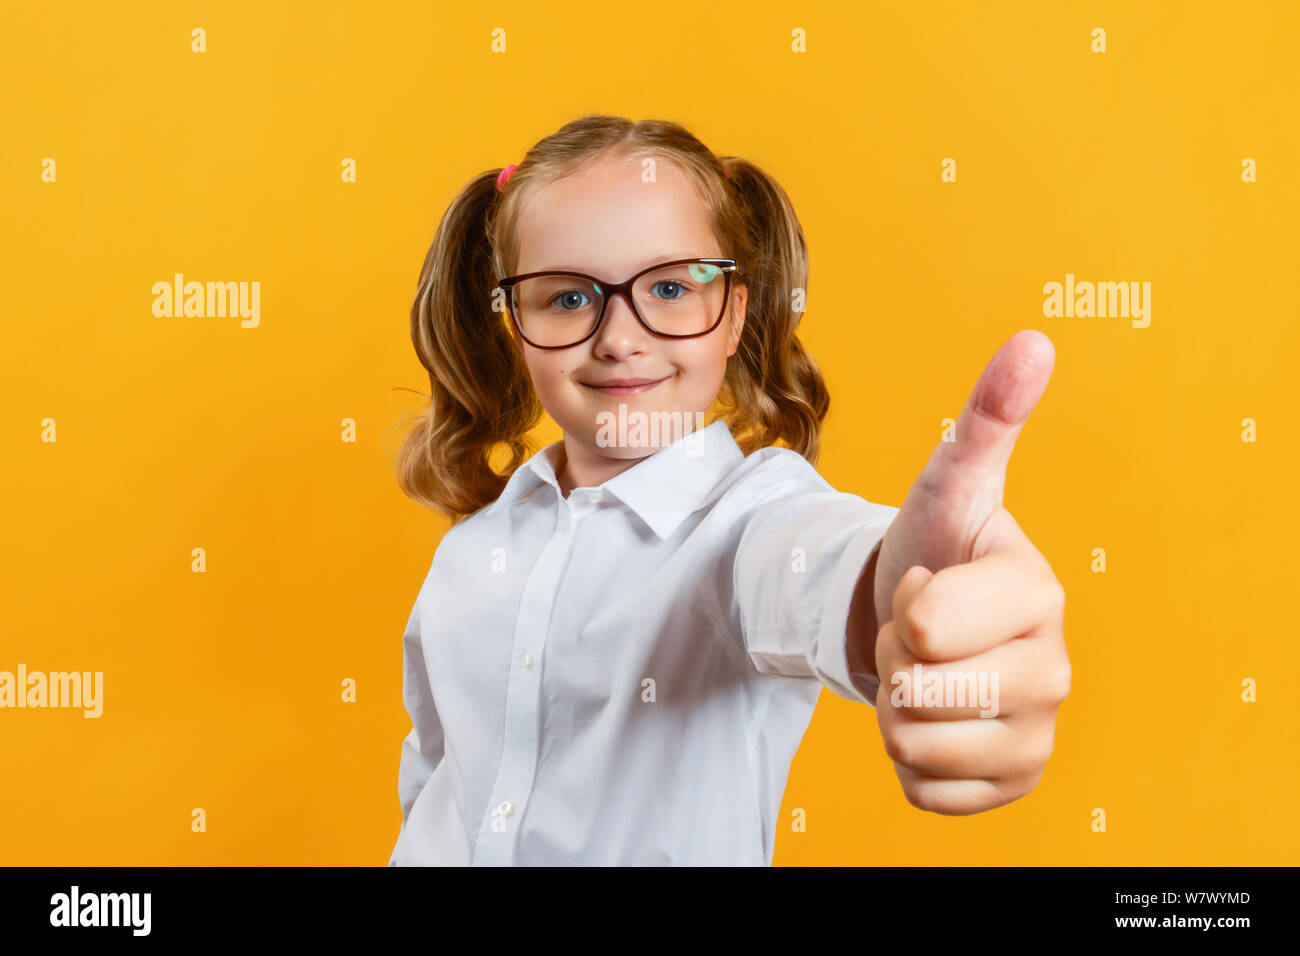 Portrait of a cute little girl attrayants dans des verres. Montre enfant pouce vers le haut sur un fond jaune. Banque D'Images